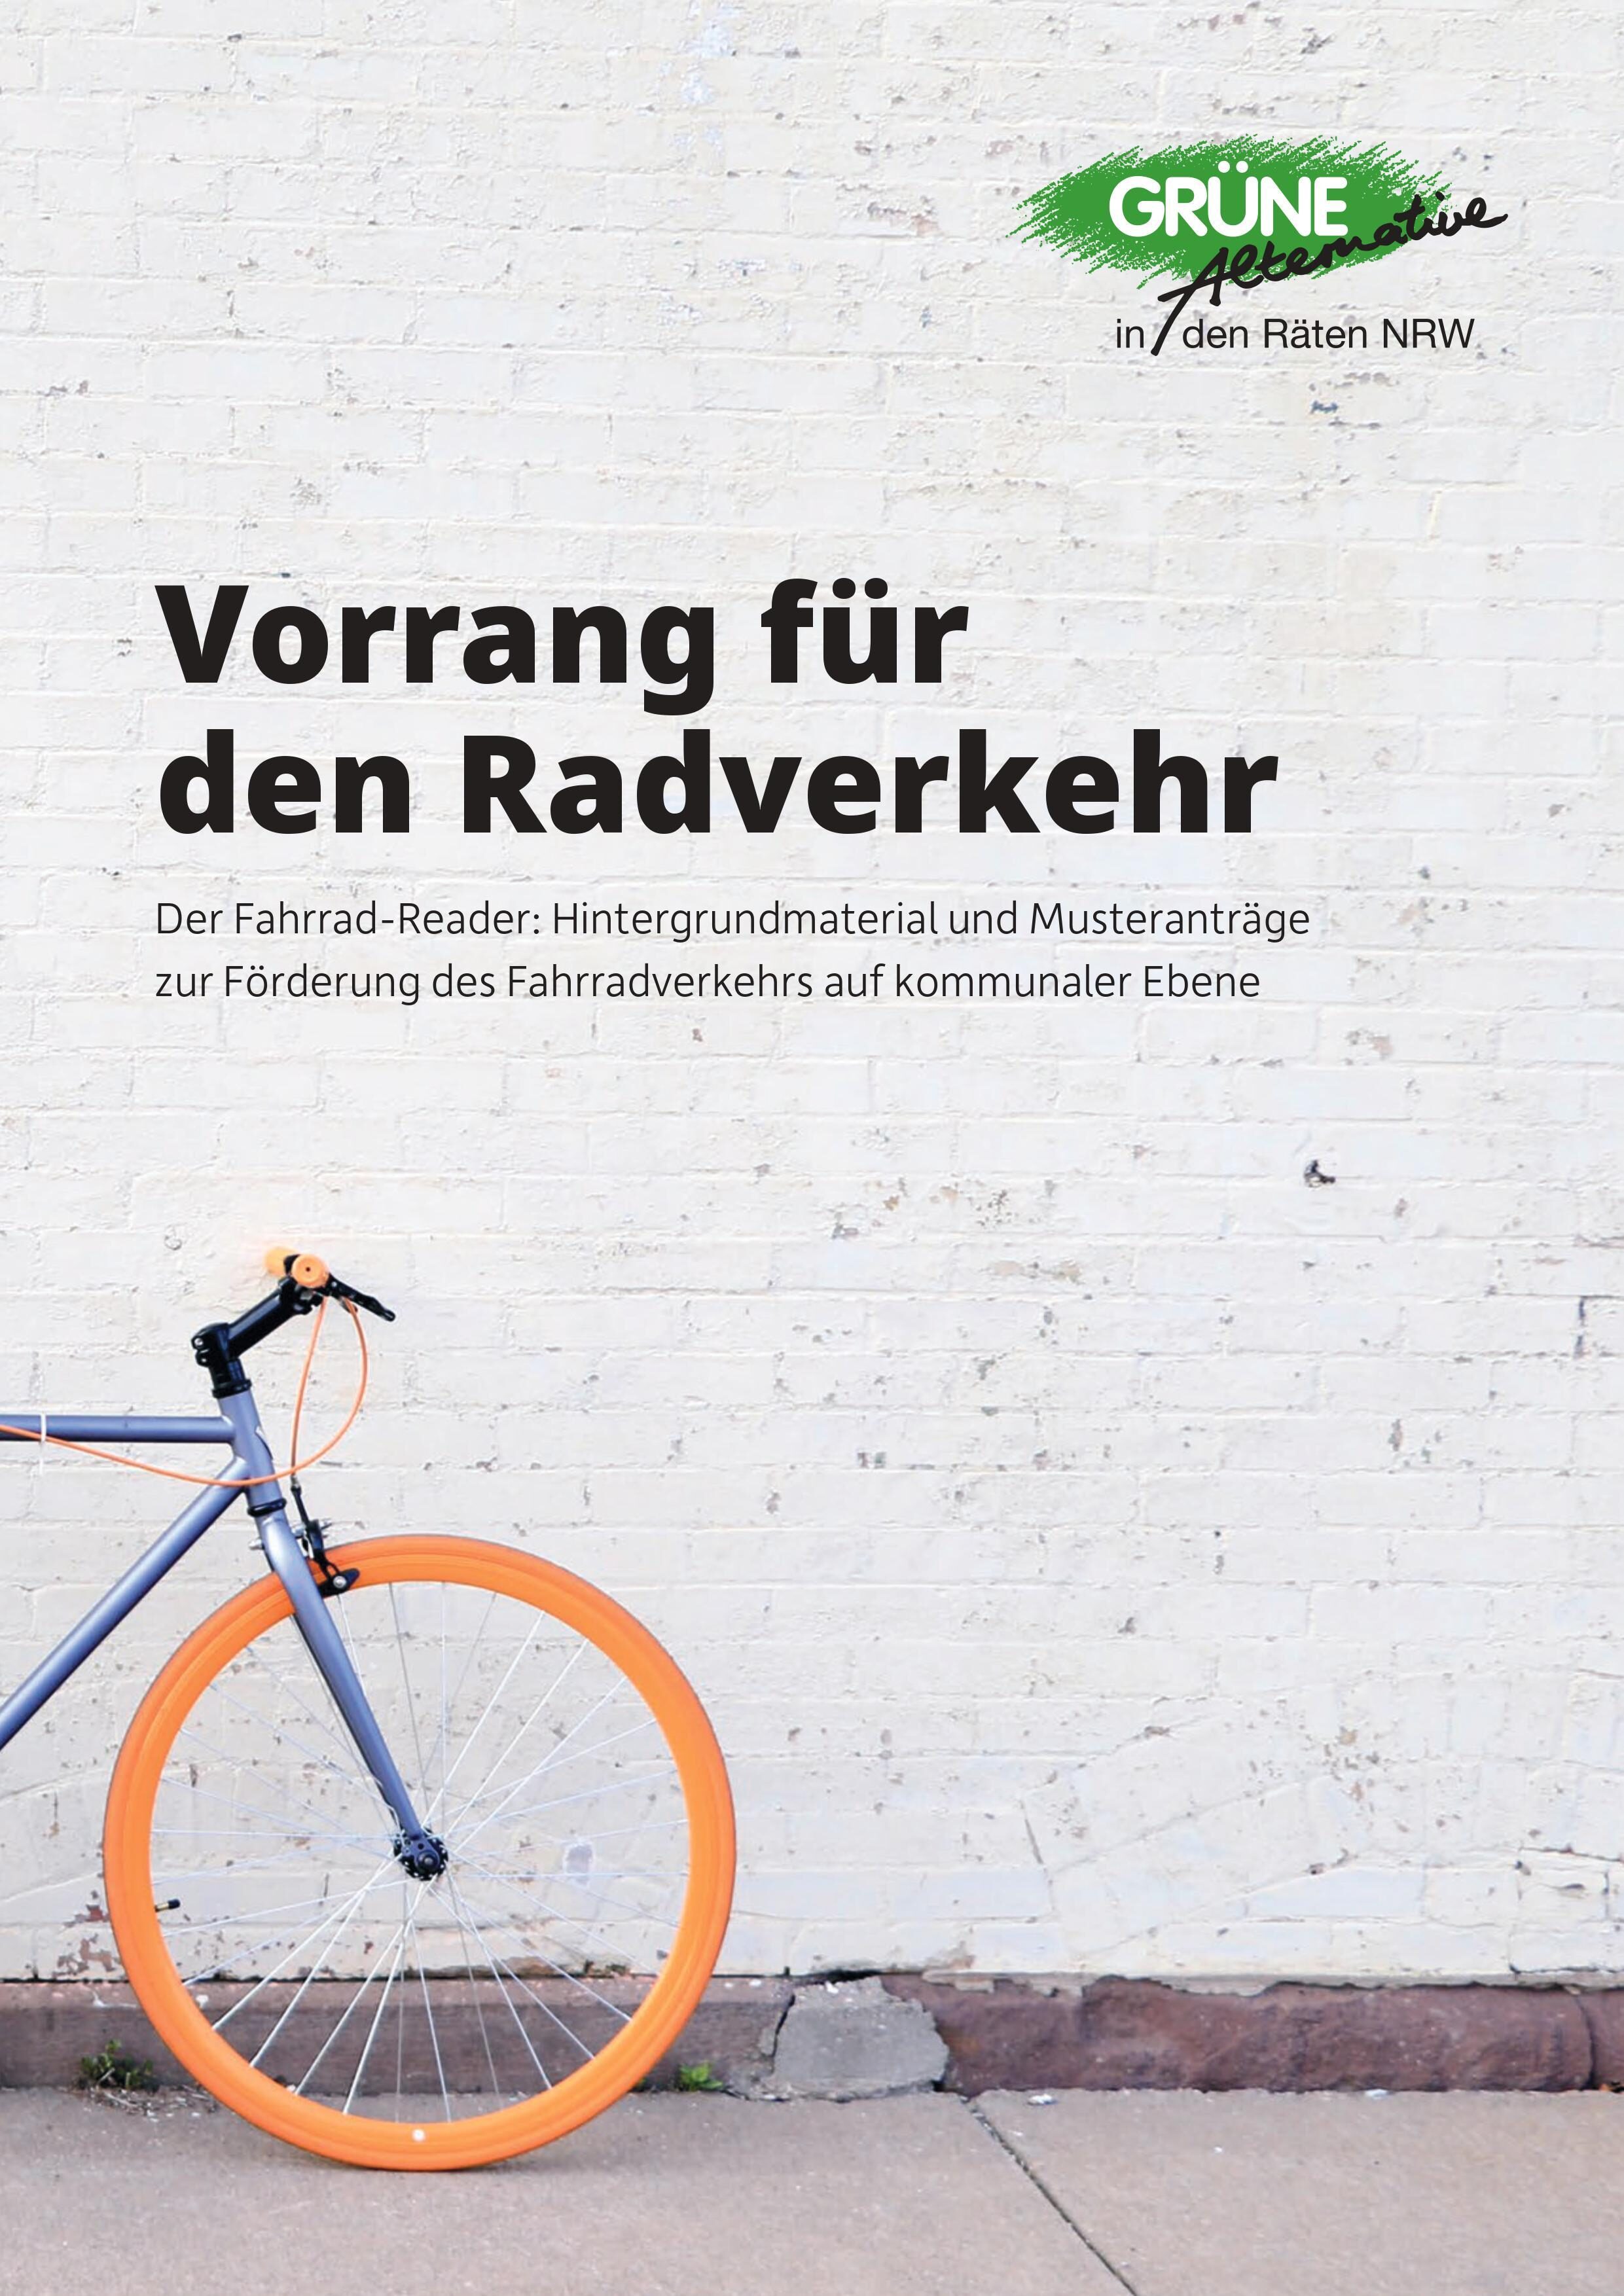 Cover zum Thema Radverkehr mit Fahrrad